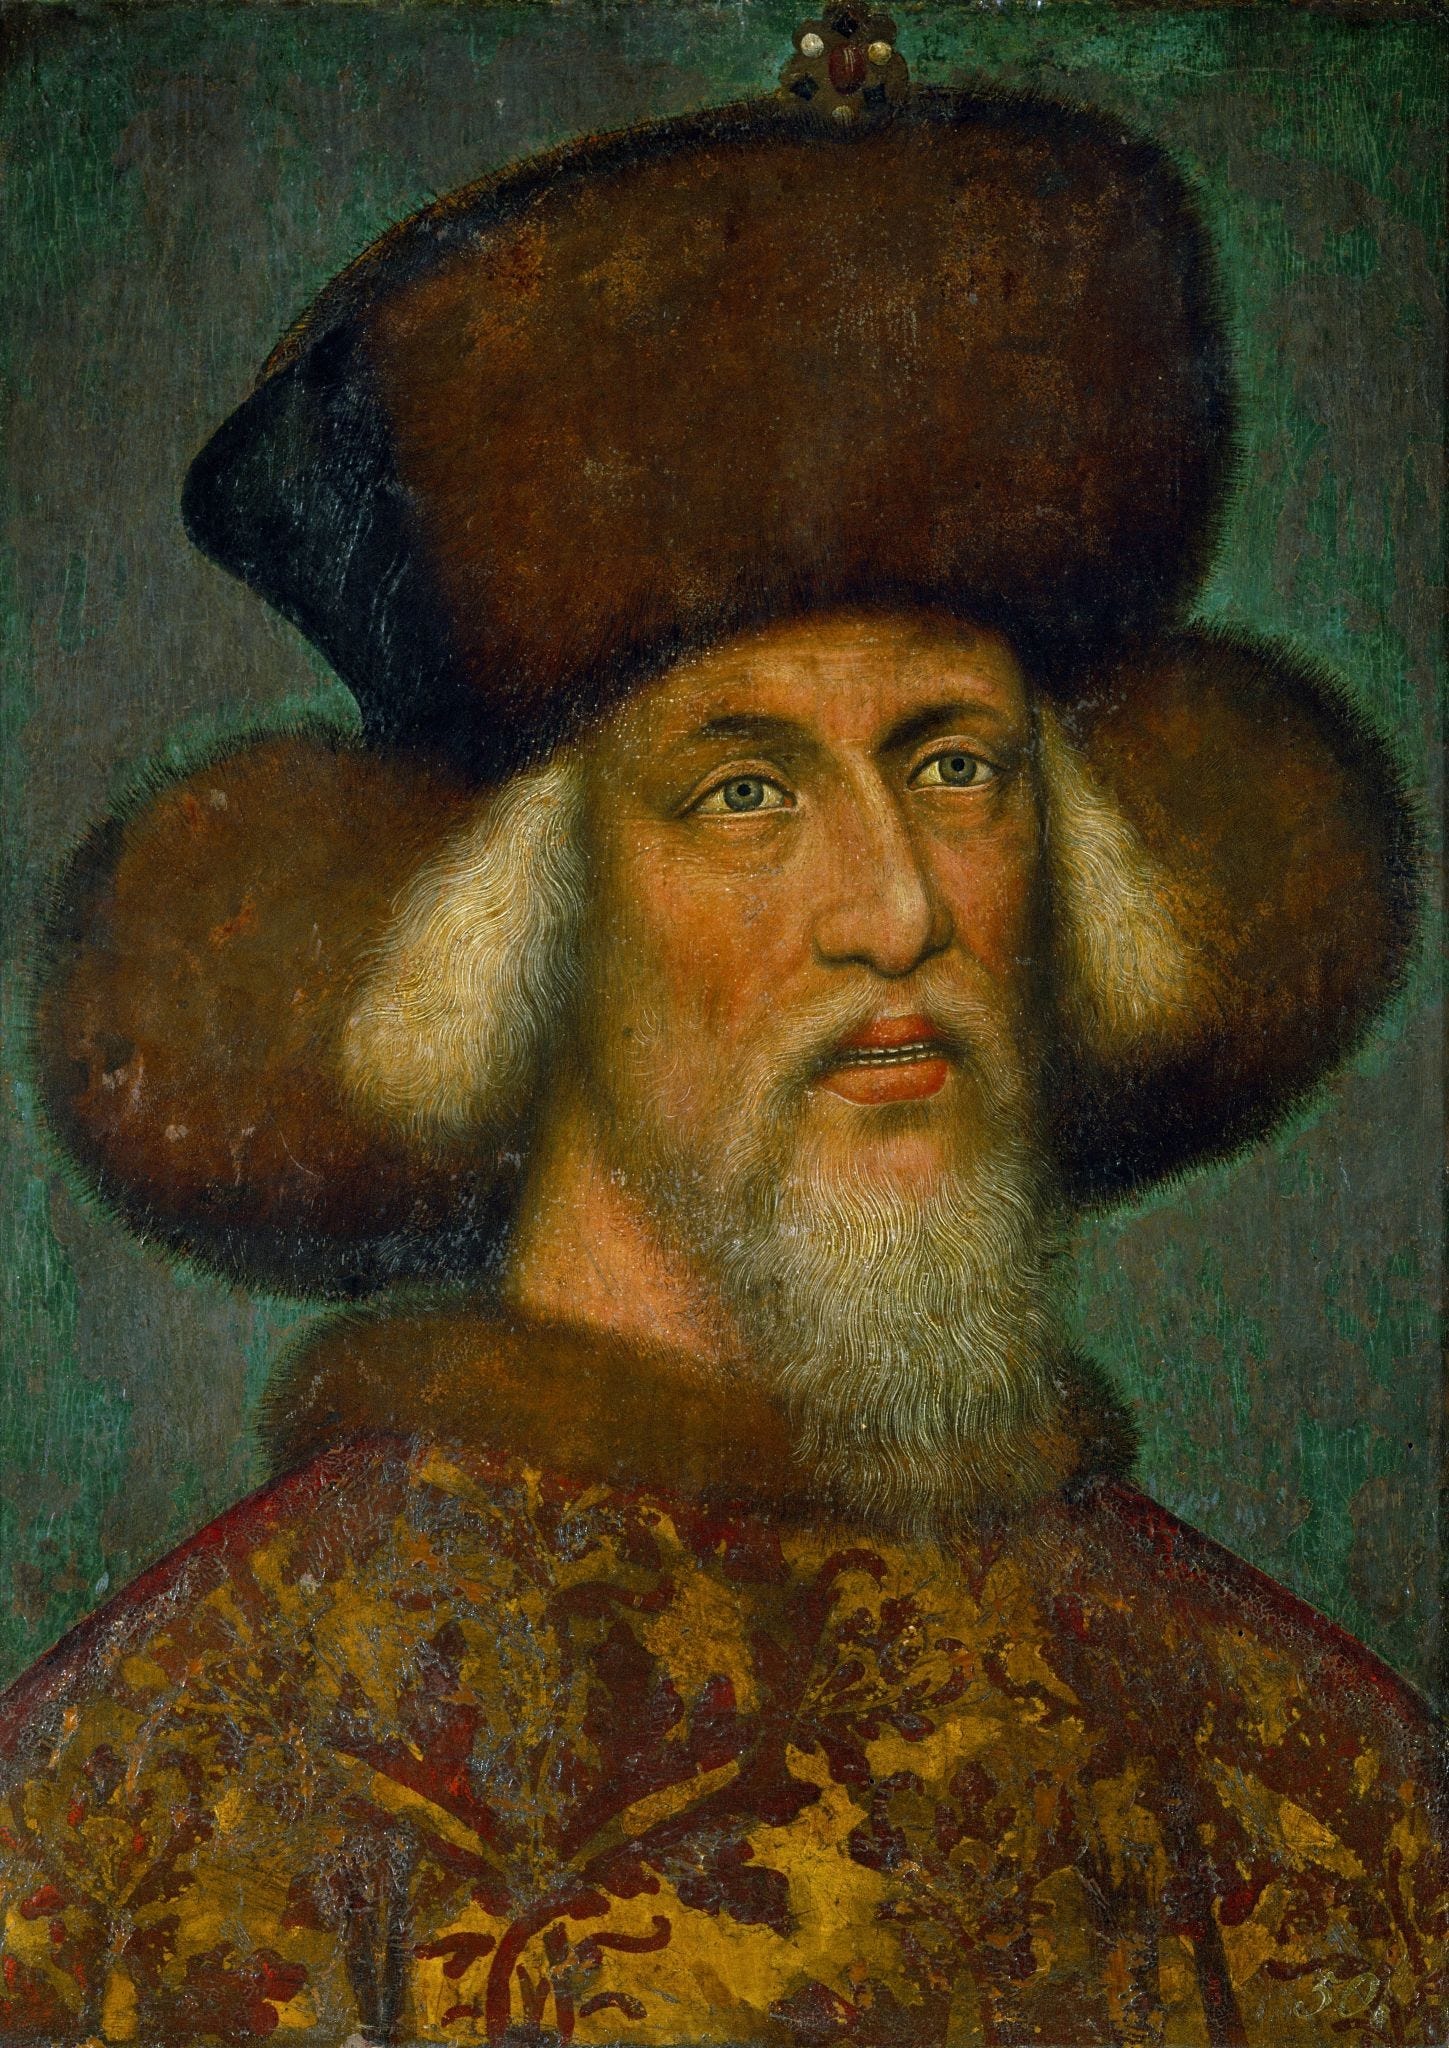 Emperor Sigismund